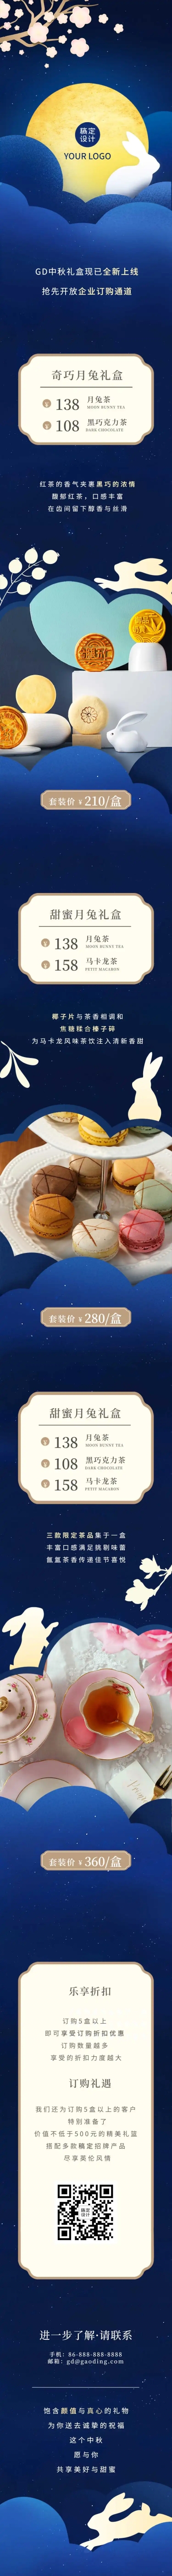 中秋节月饼产品推广定制企业礼品文章长图预览效果